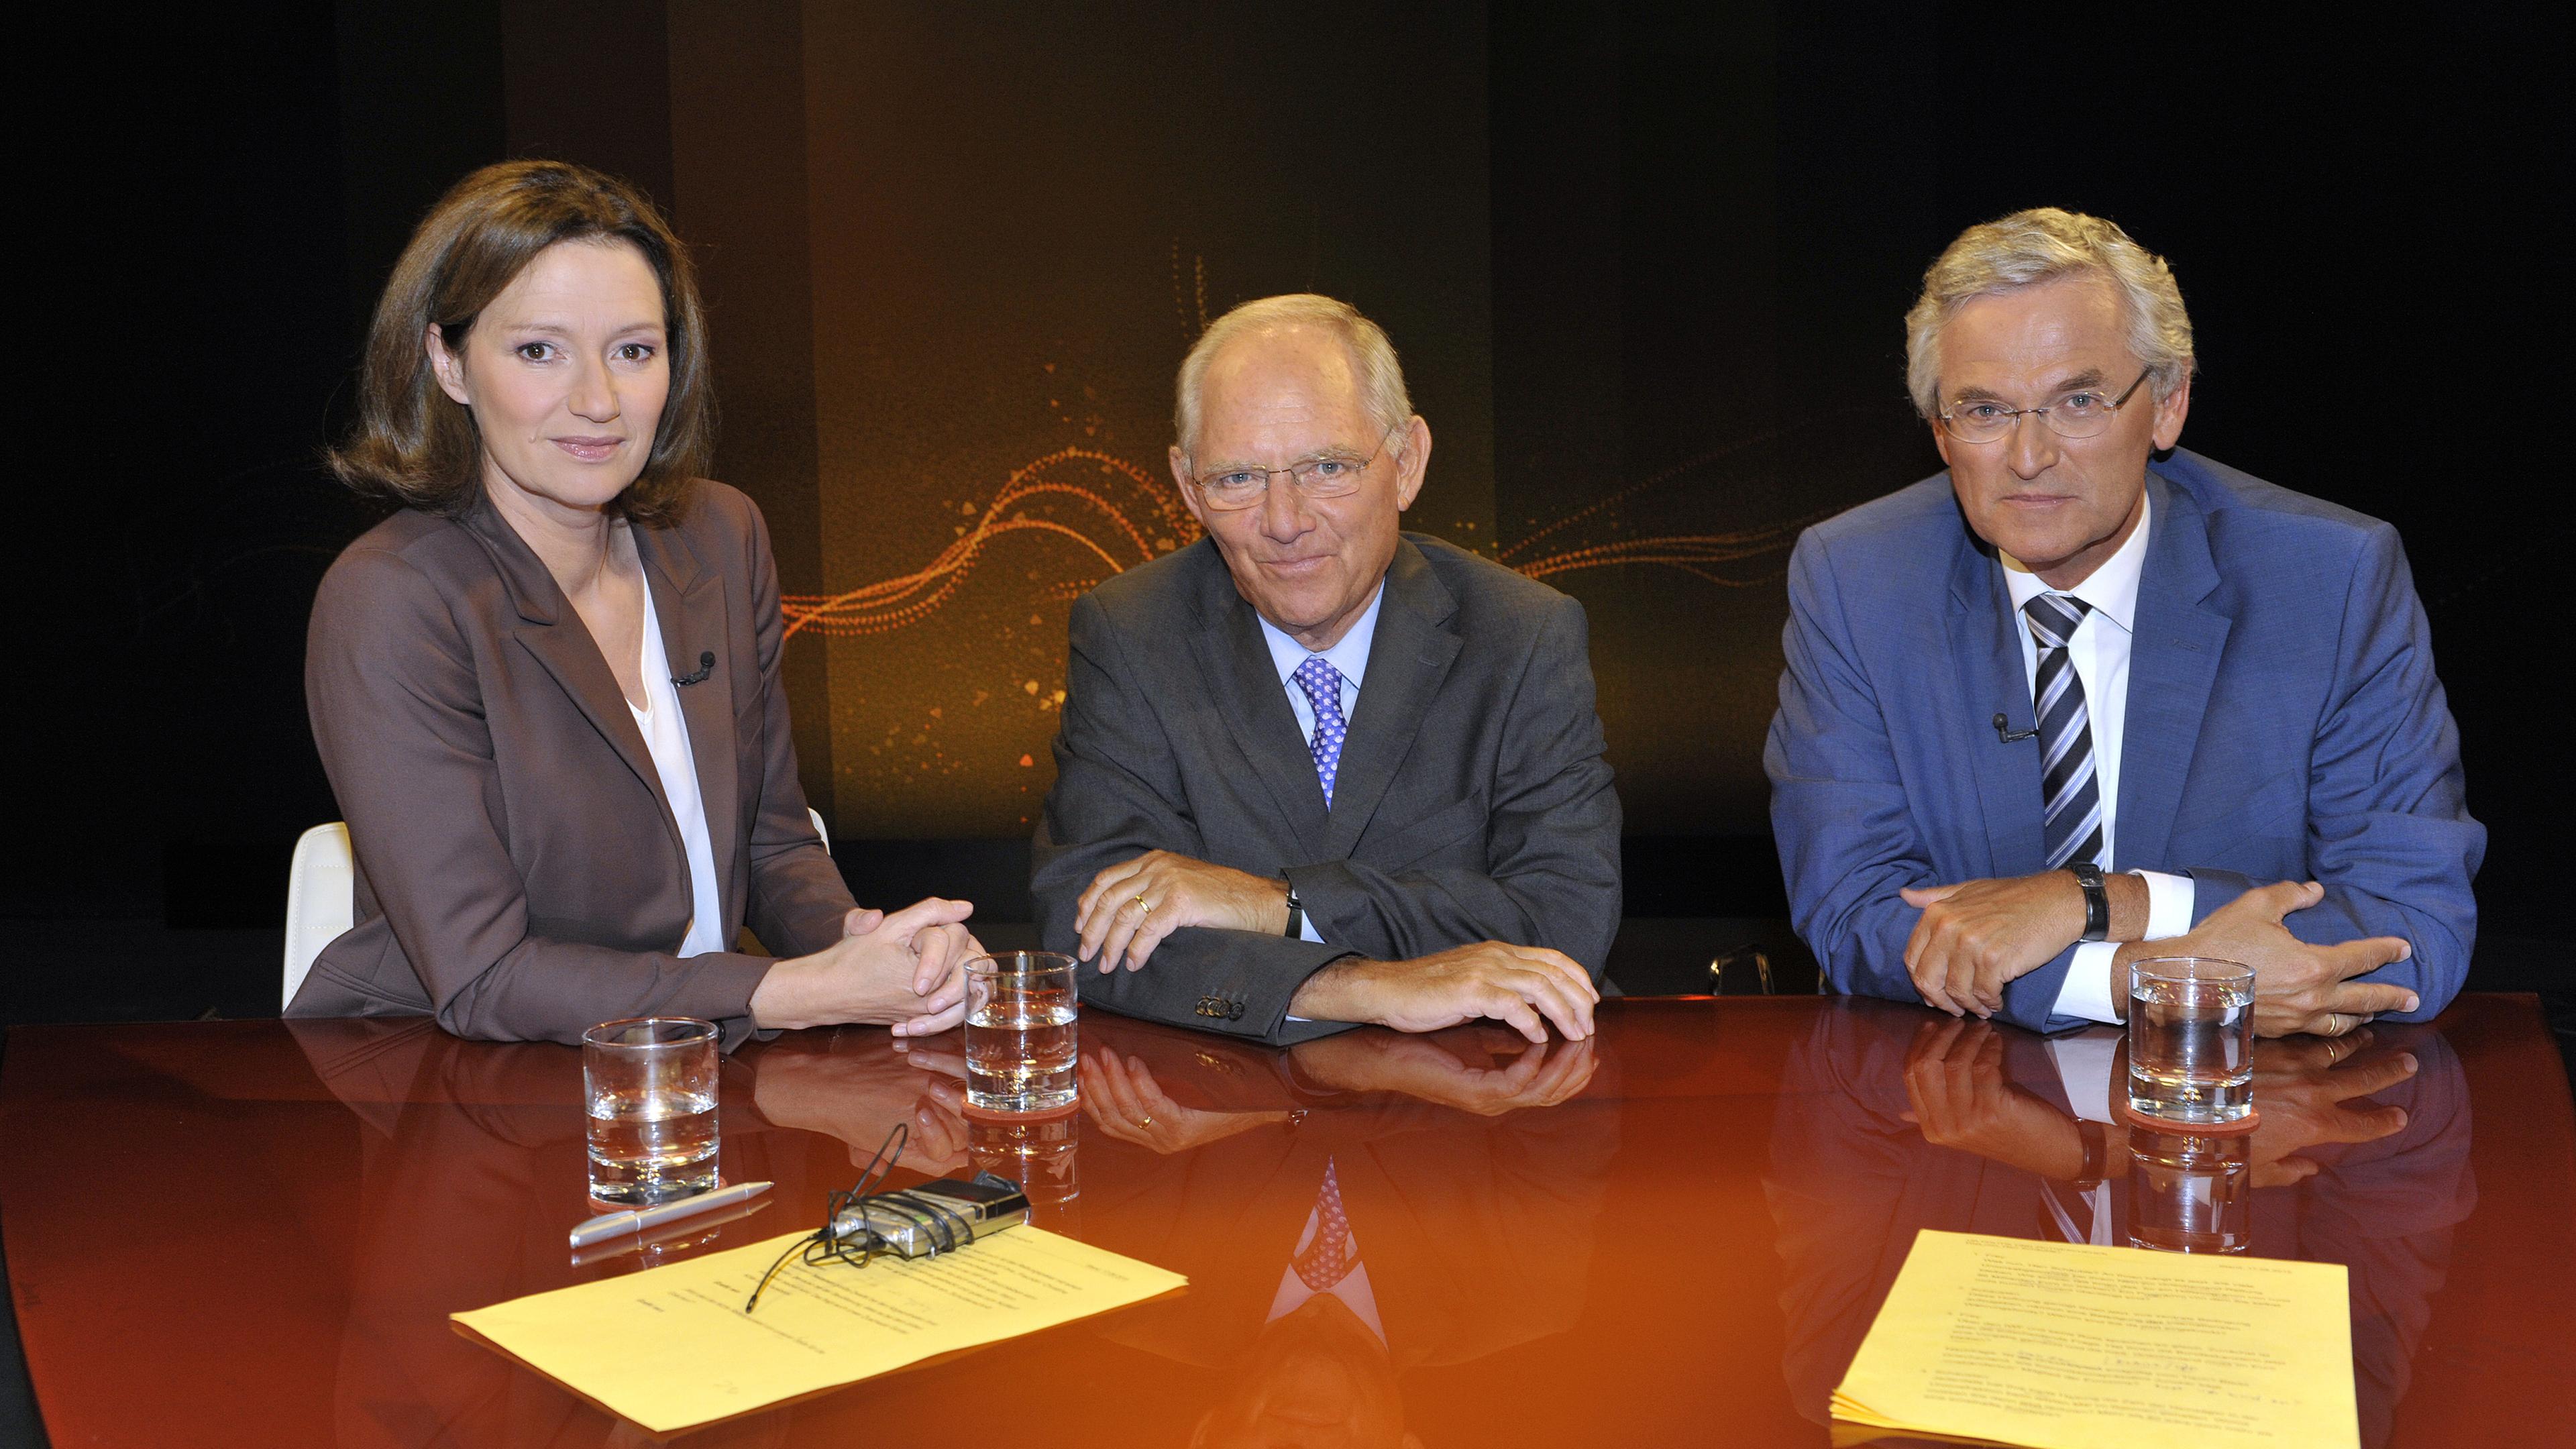 Wolfgang Schäuble sitzt zwischen der Leiterin des ZDF-Hauptstadtstudios Bettina Schausten und ZDF-Chefredakteur Peter Frey bei der Aufzeichnung der ZDF-Sendung "Was nun, Herr Schäuble?" am 17.08.2015.